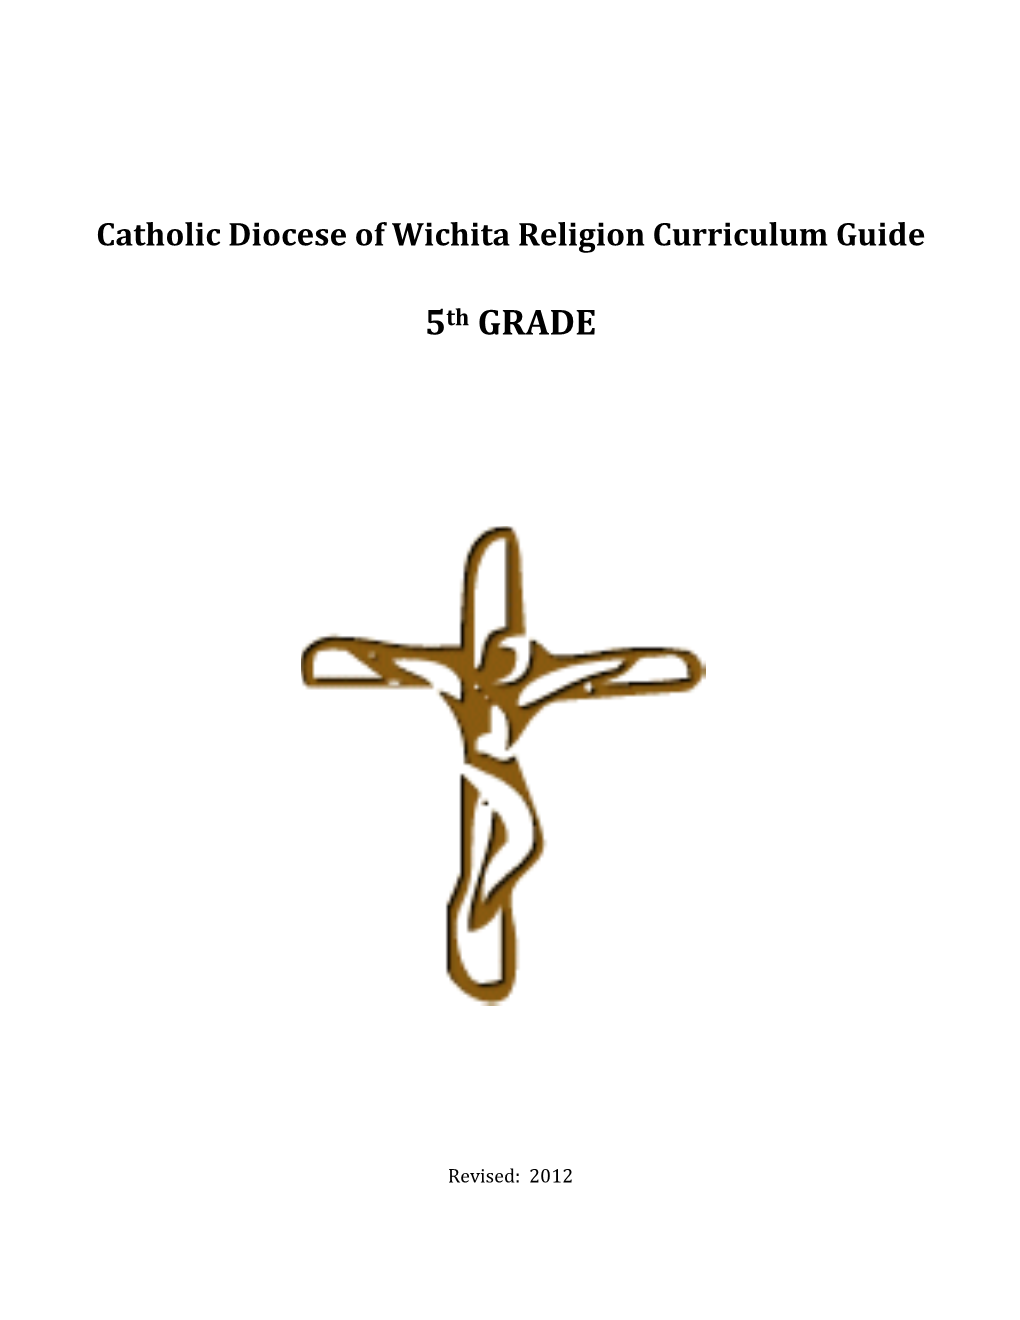 Religion Curriculum Guide